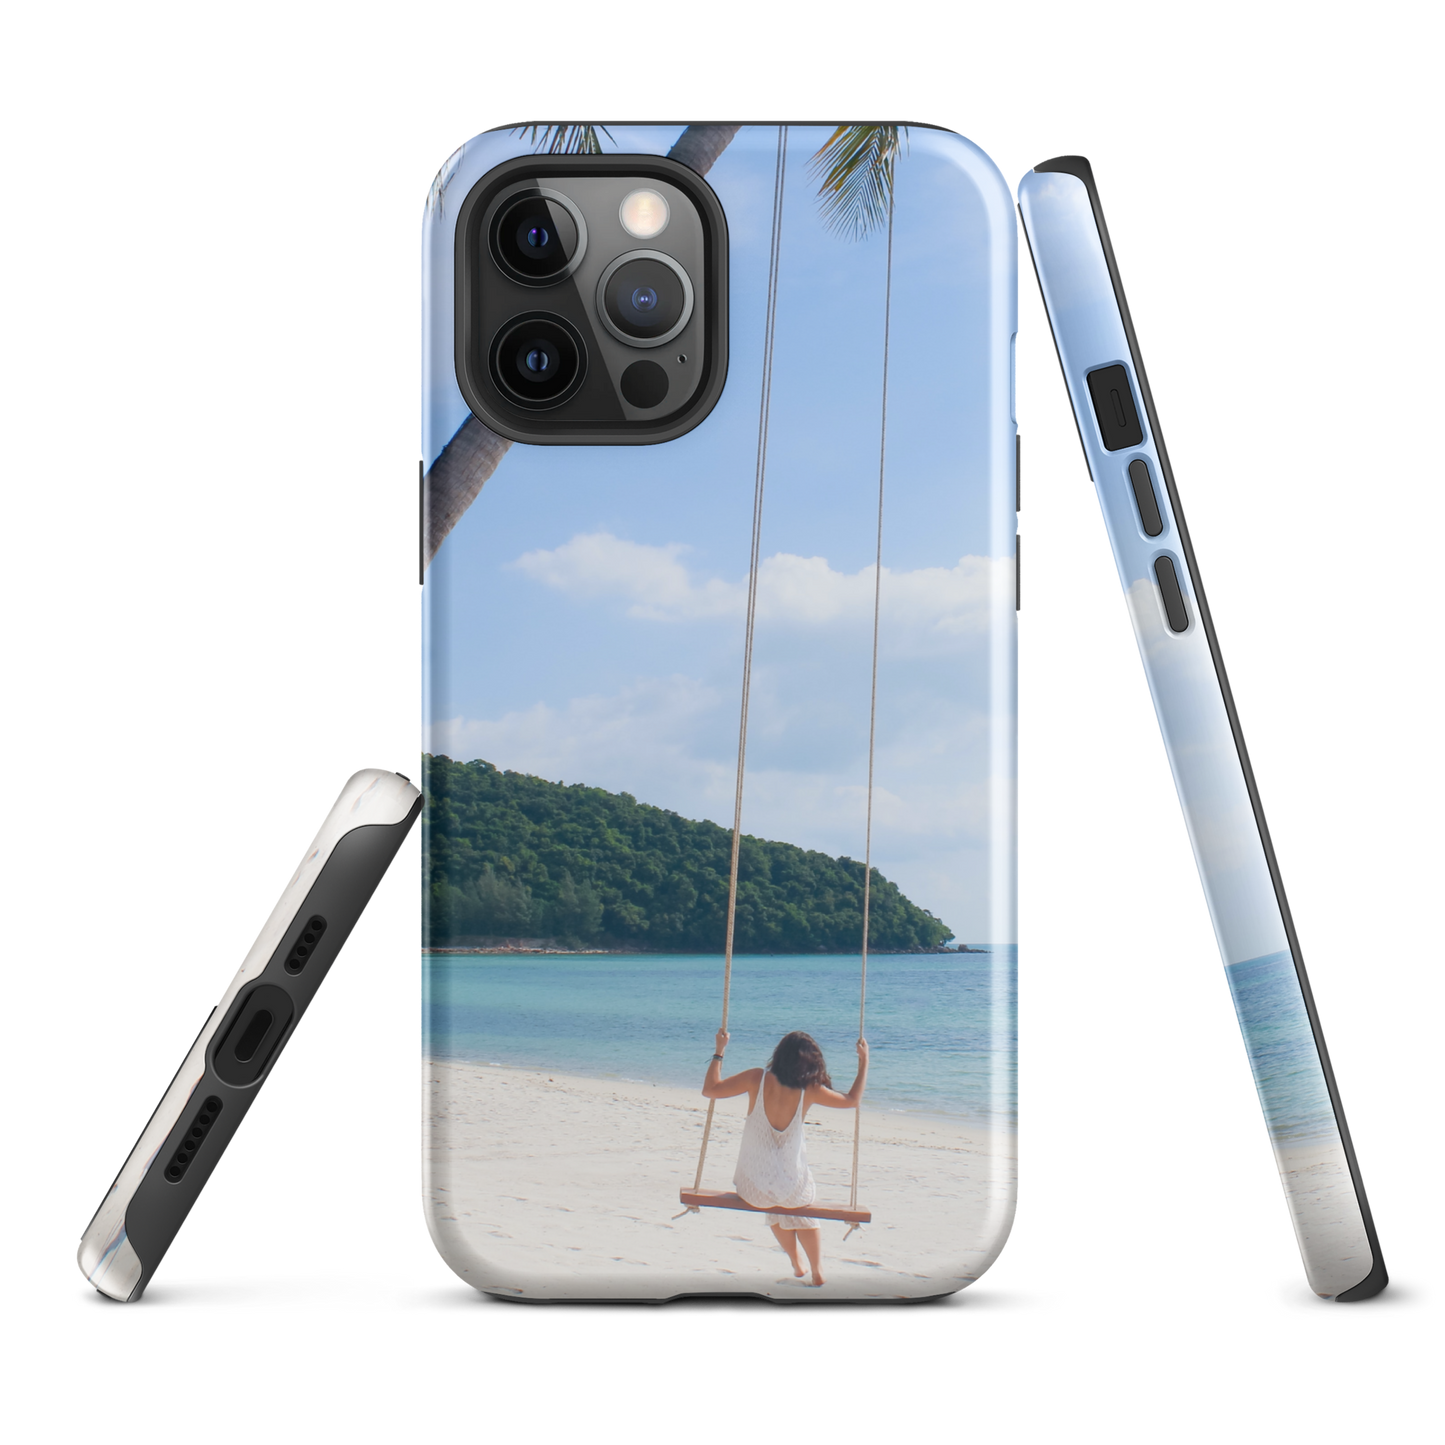 Proteja su iPhone® con estilo: ¡estuche resistente de playa de verano para aventuras sin fin!